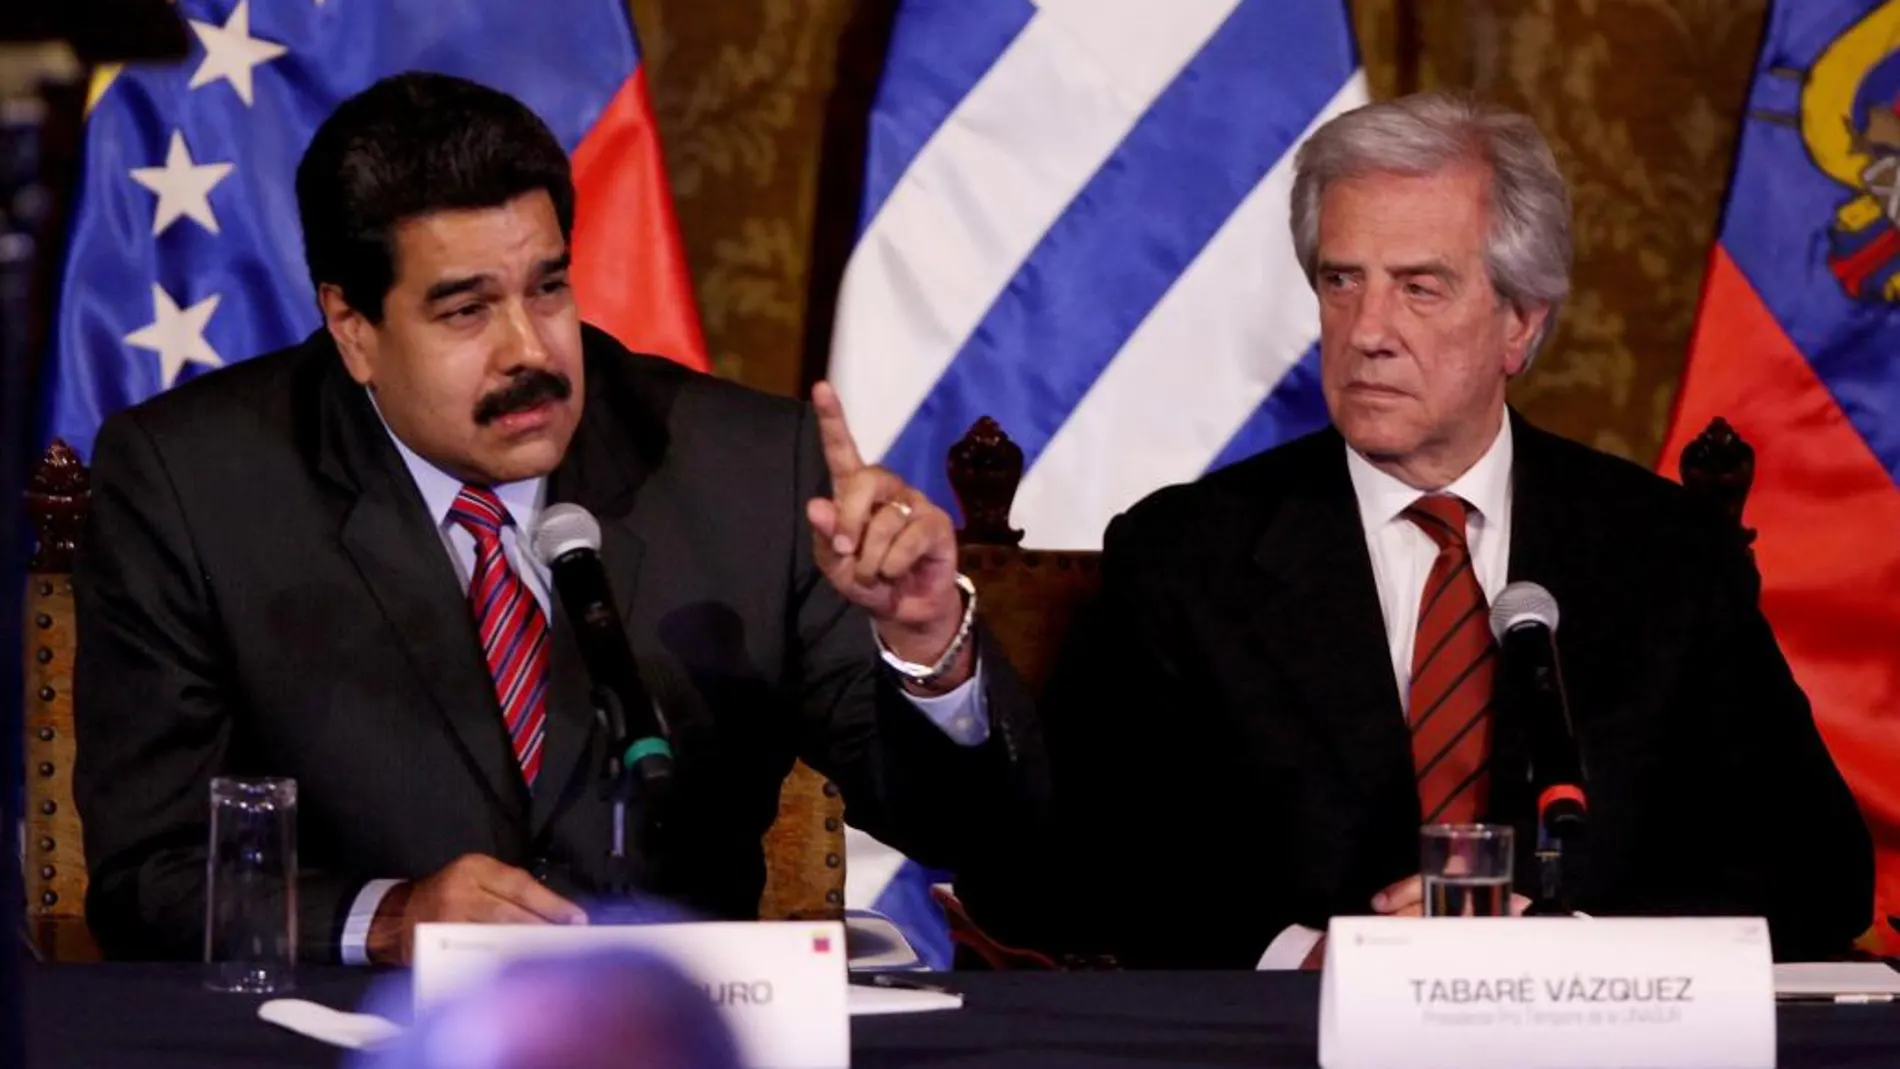 El presidente de Venezuela Nicolás Maduro, junto al presidente de Uruguay Tabaré Vazquez.